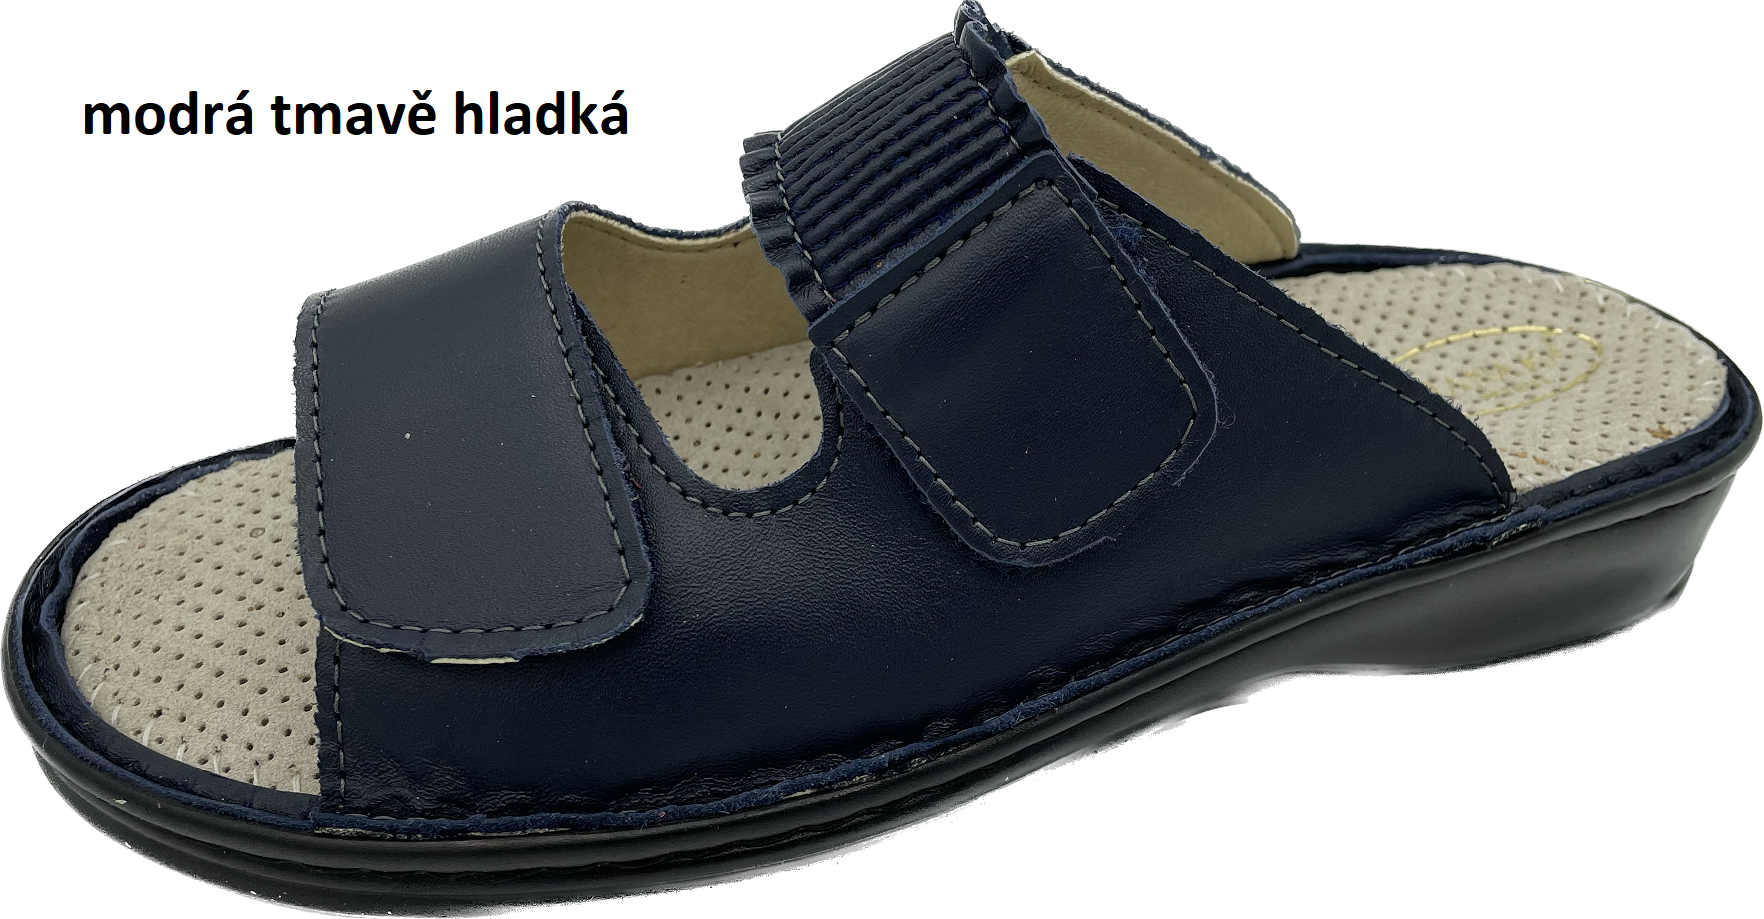 Boty Hanák vzor 304 - černá podešev Barva usně: modrá tmavě hladká, Velikosti obuvi: 38